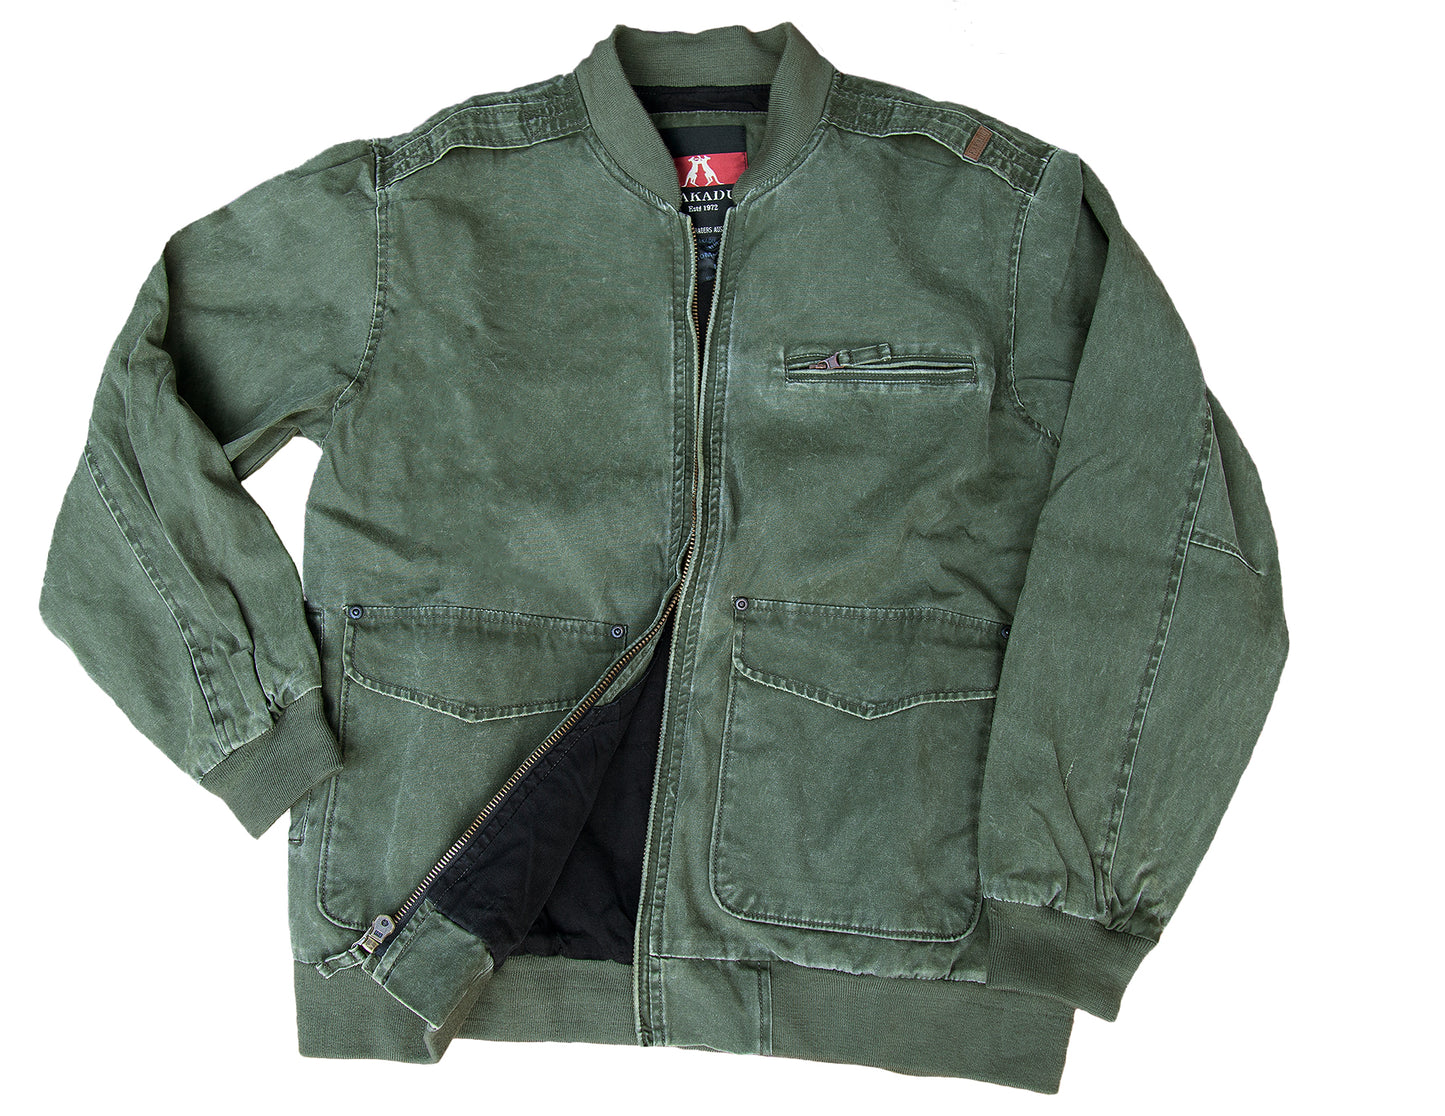 Freizeitjacke Blouson Jacke mit Strickkragen und Reißverschluss in tobacco und loden grün